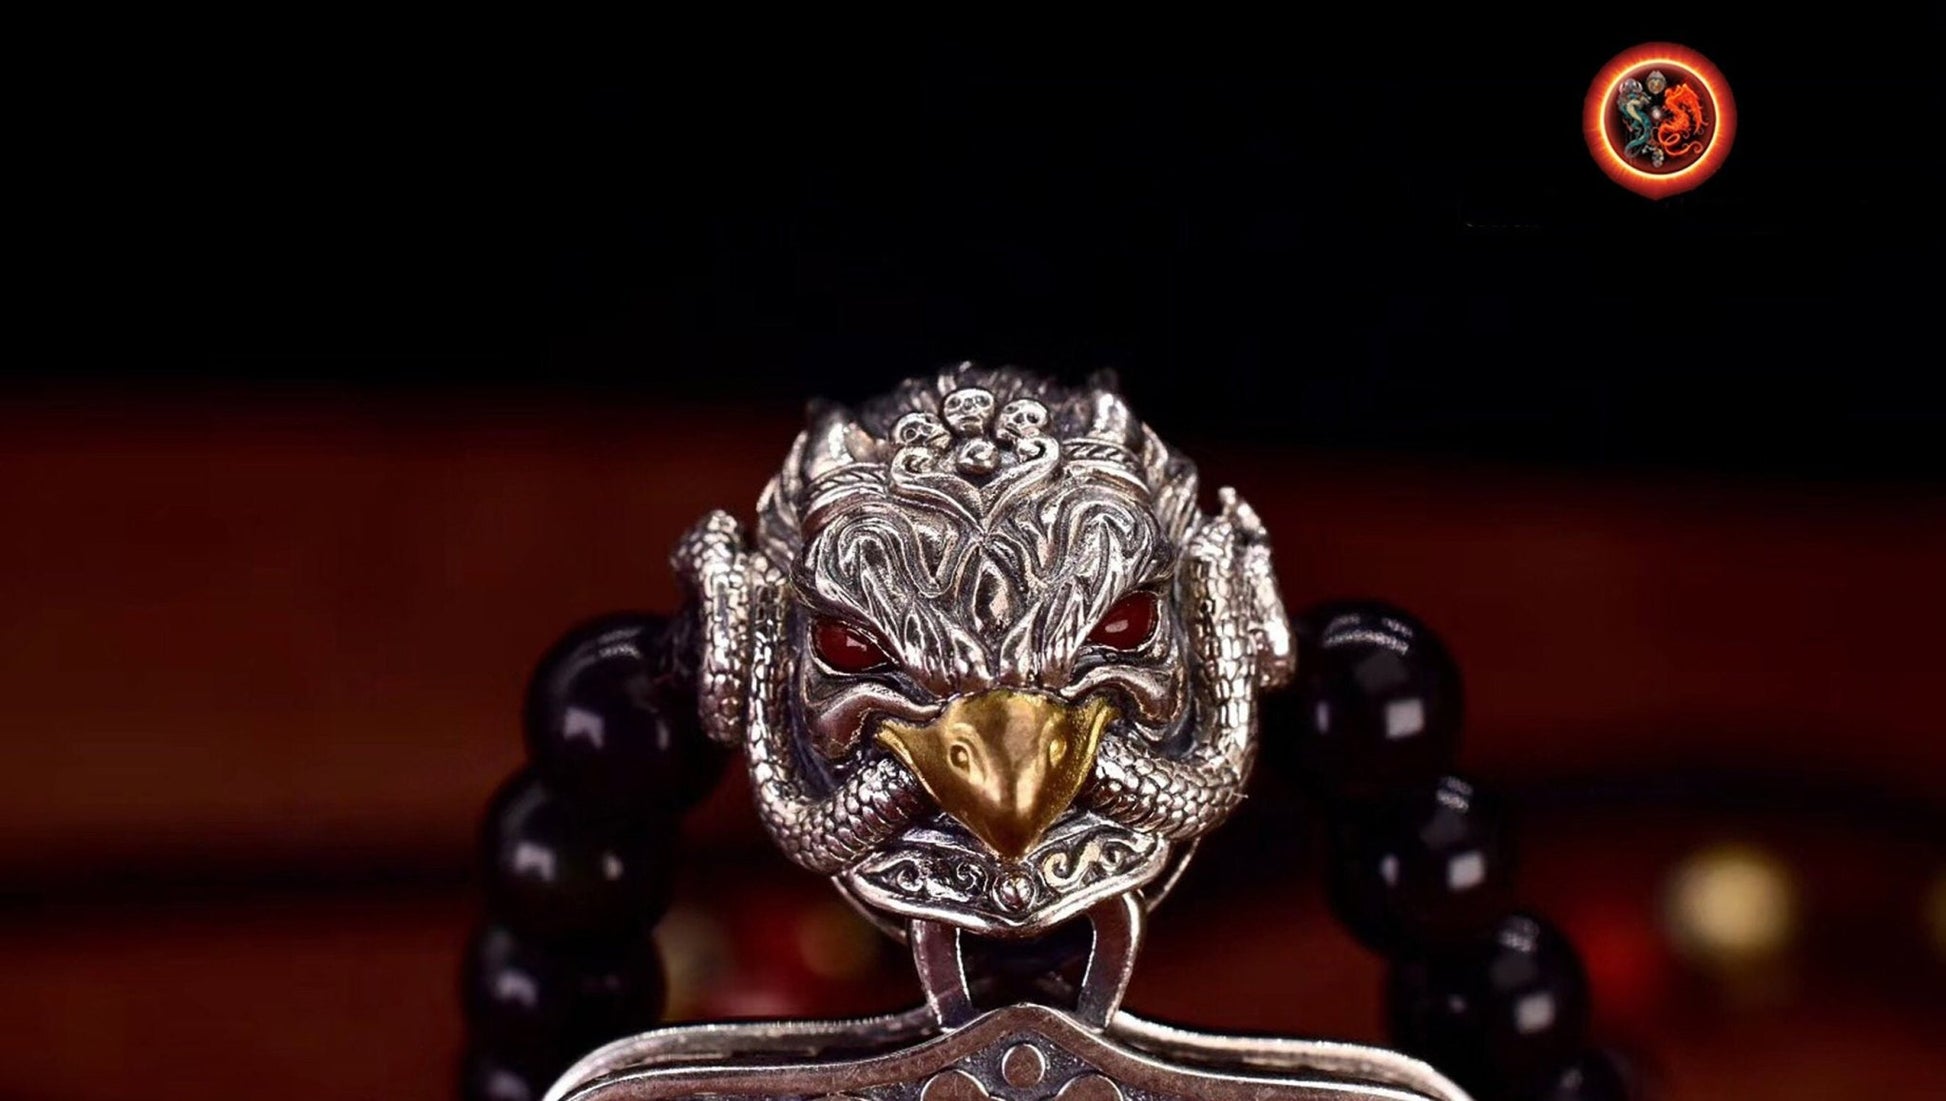 pendentif amulette de protection bouddhiste Bouddha Acala mala de prière et méditation 108 perles, argent 925 or 18K bélière Garuda - obsidian dragon